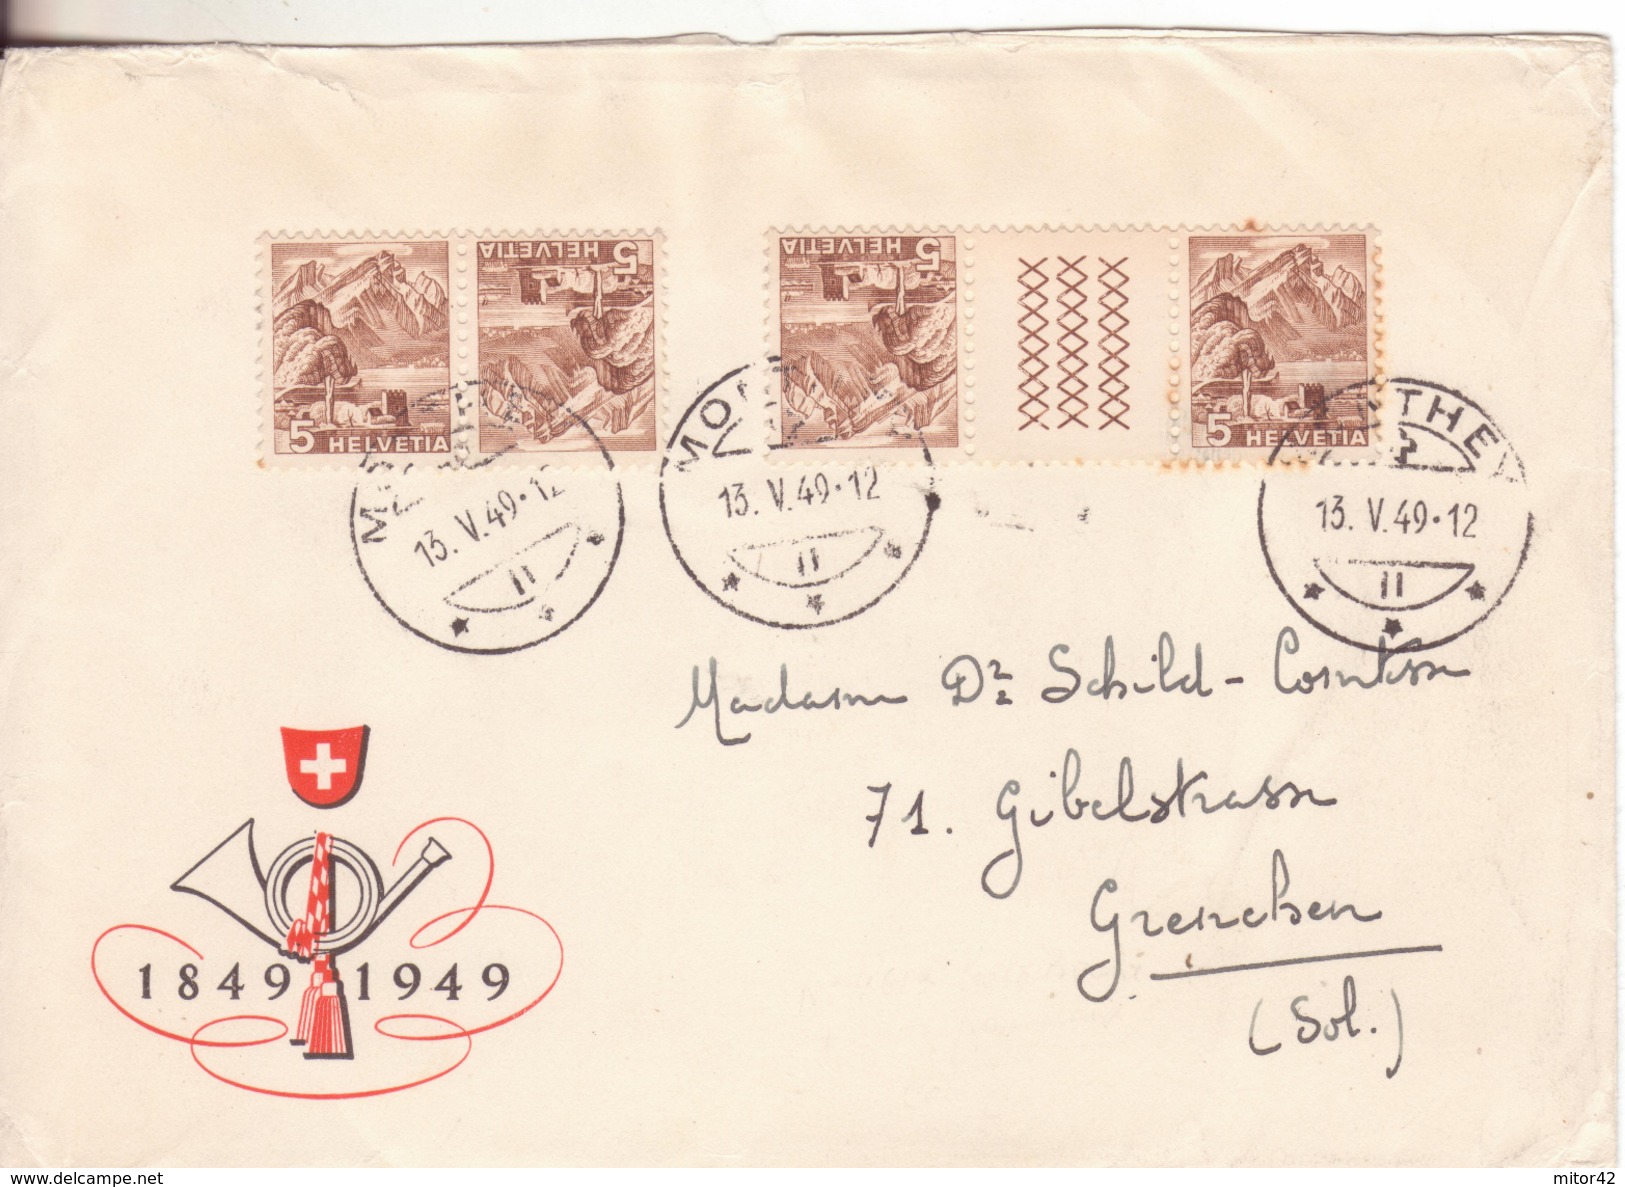 9-svizzera-francobolli Tete-beche Con E Senza Interspazio Su Busta-v.1949 - Tete Beche